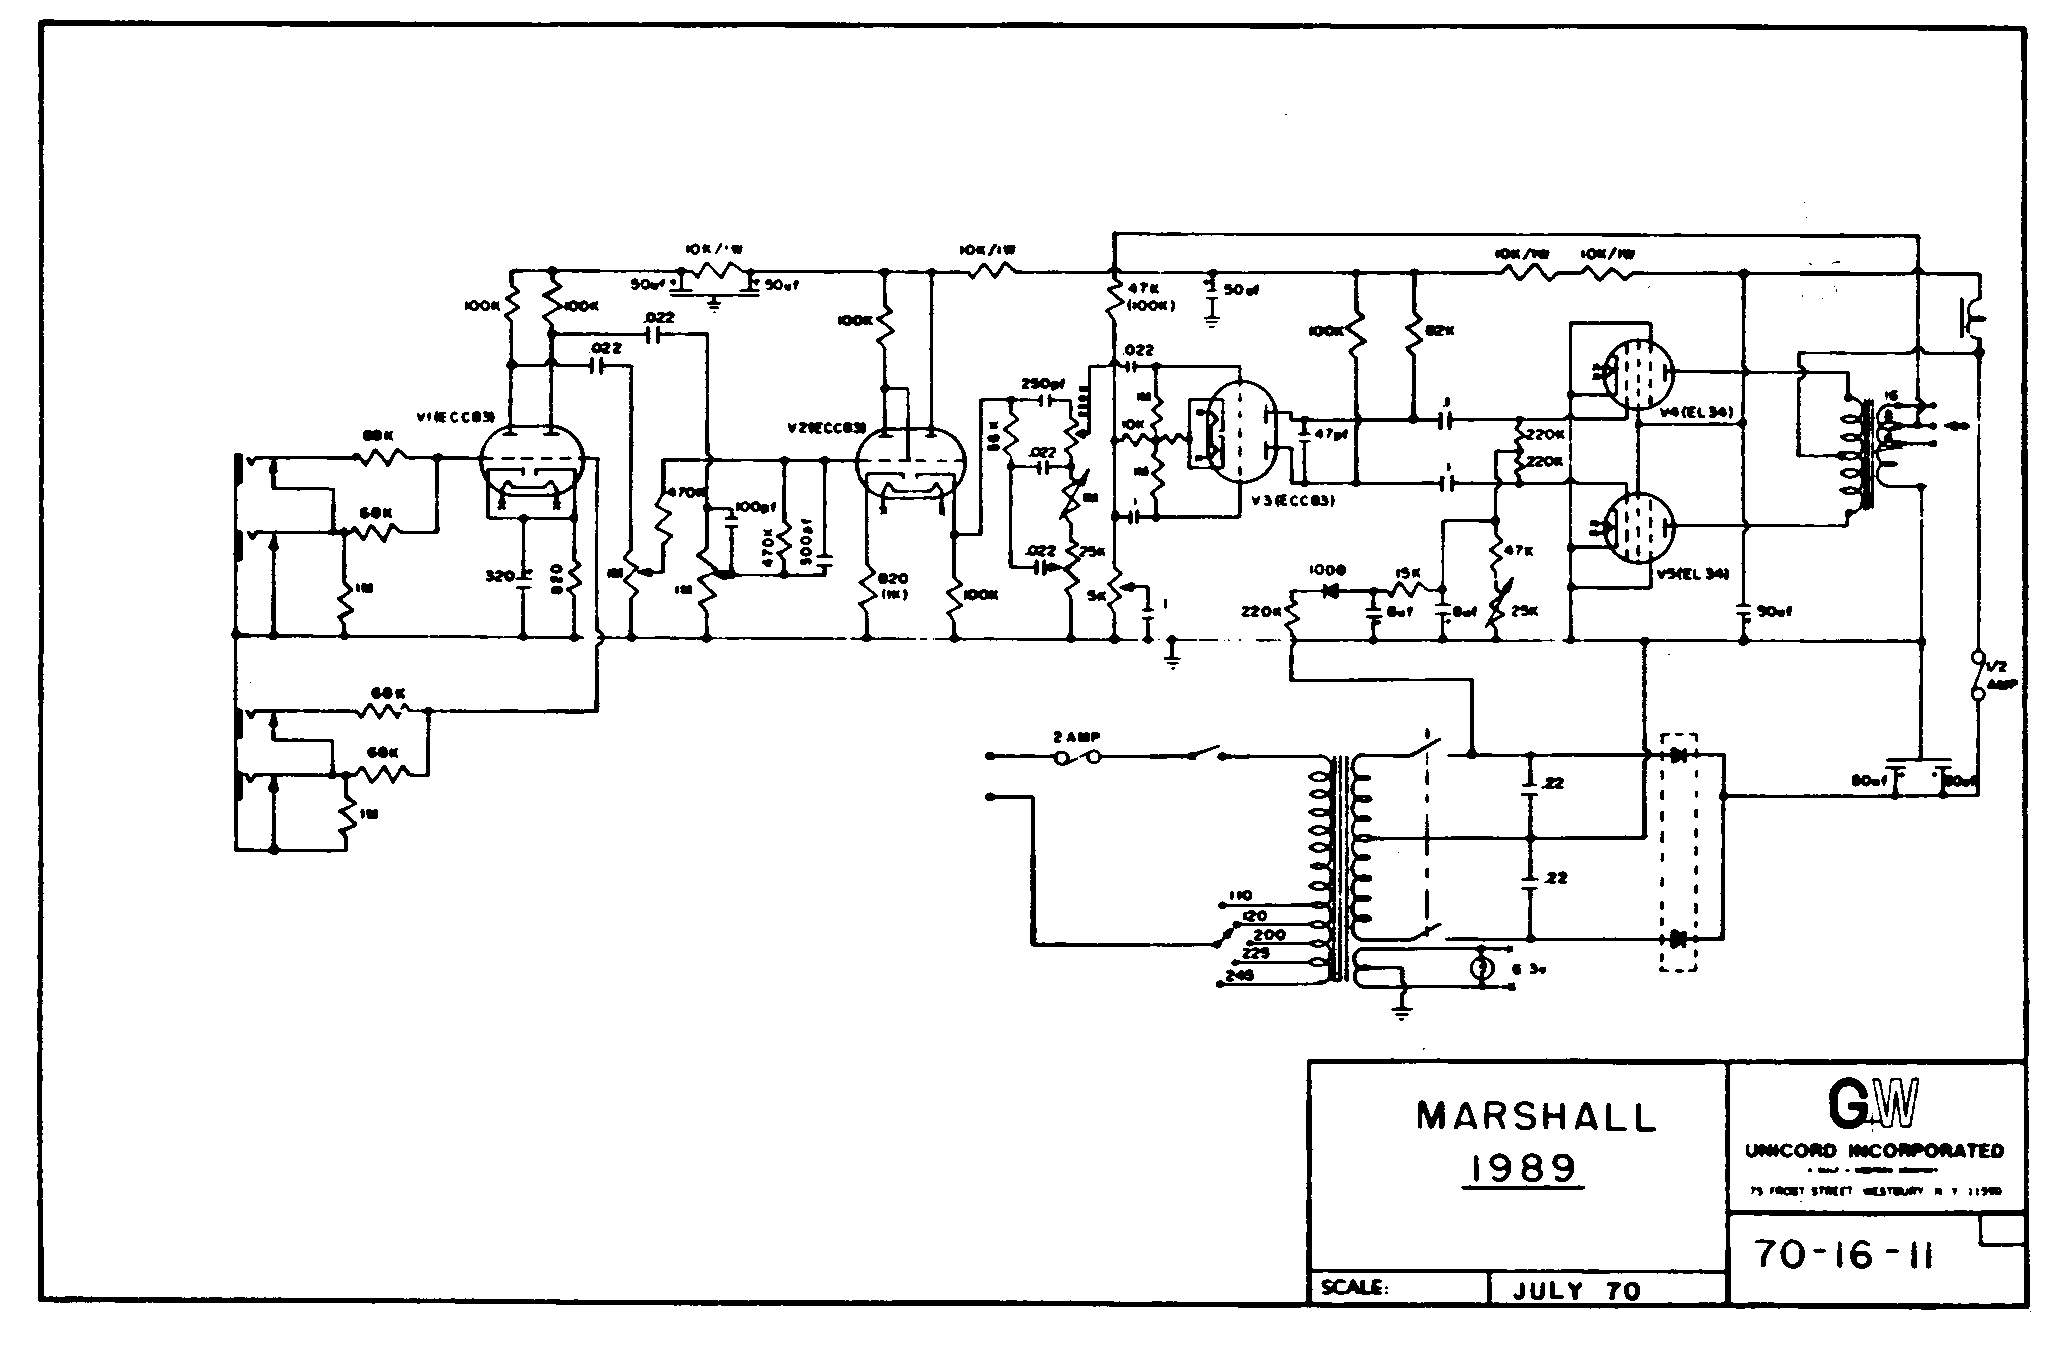 Marshall 1989 Schematic